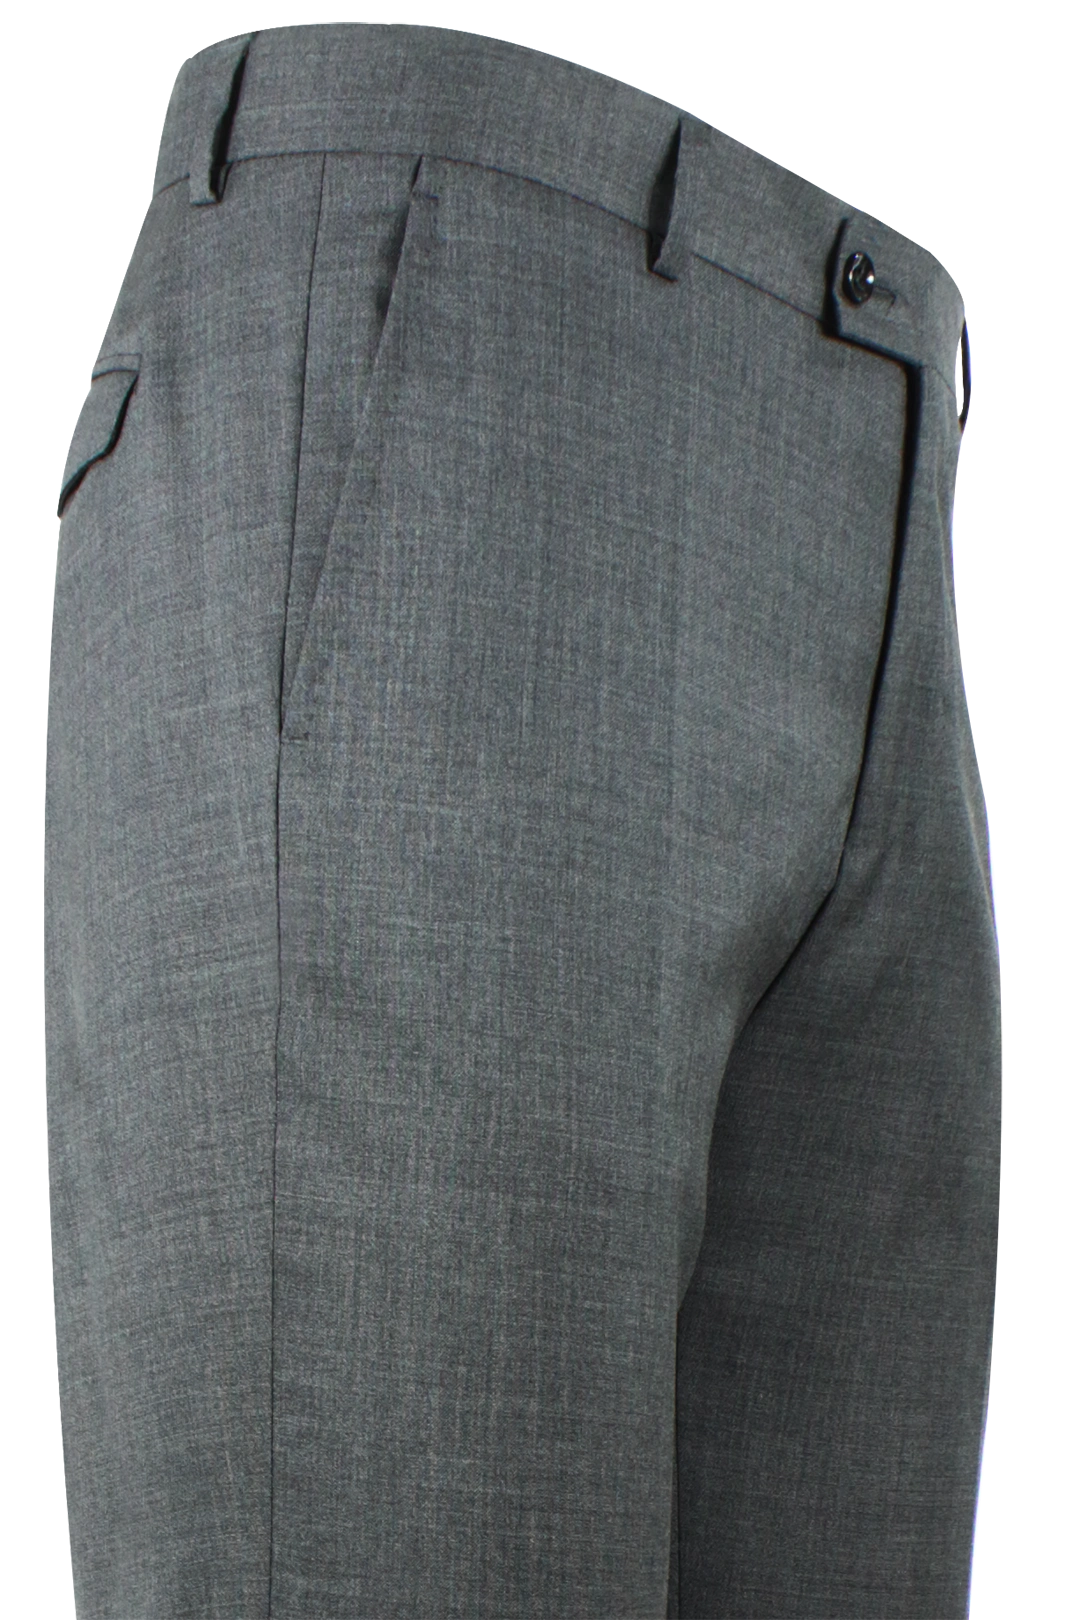 Pantalone risvolto tela di lana grigio medio profilo